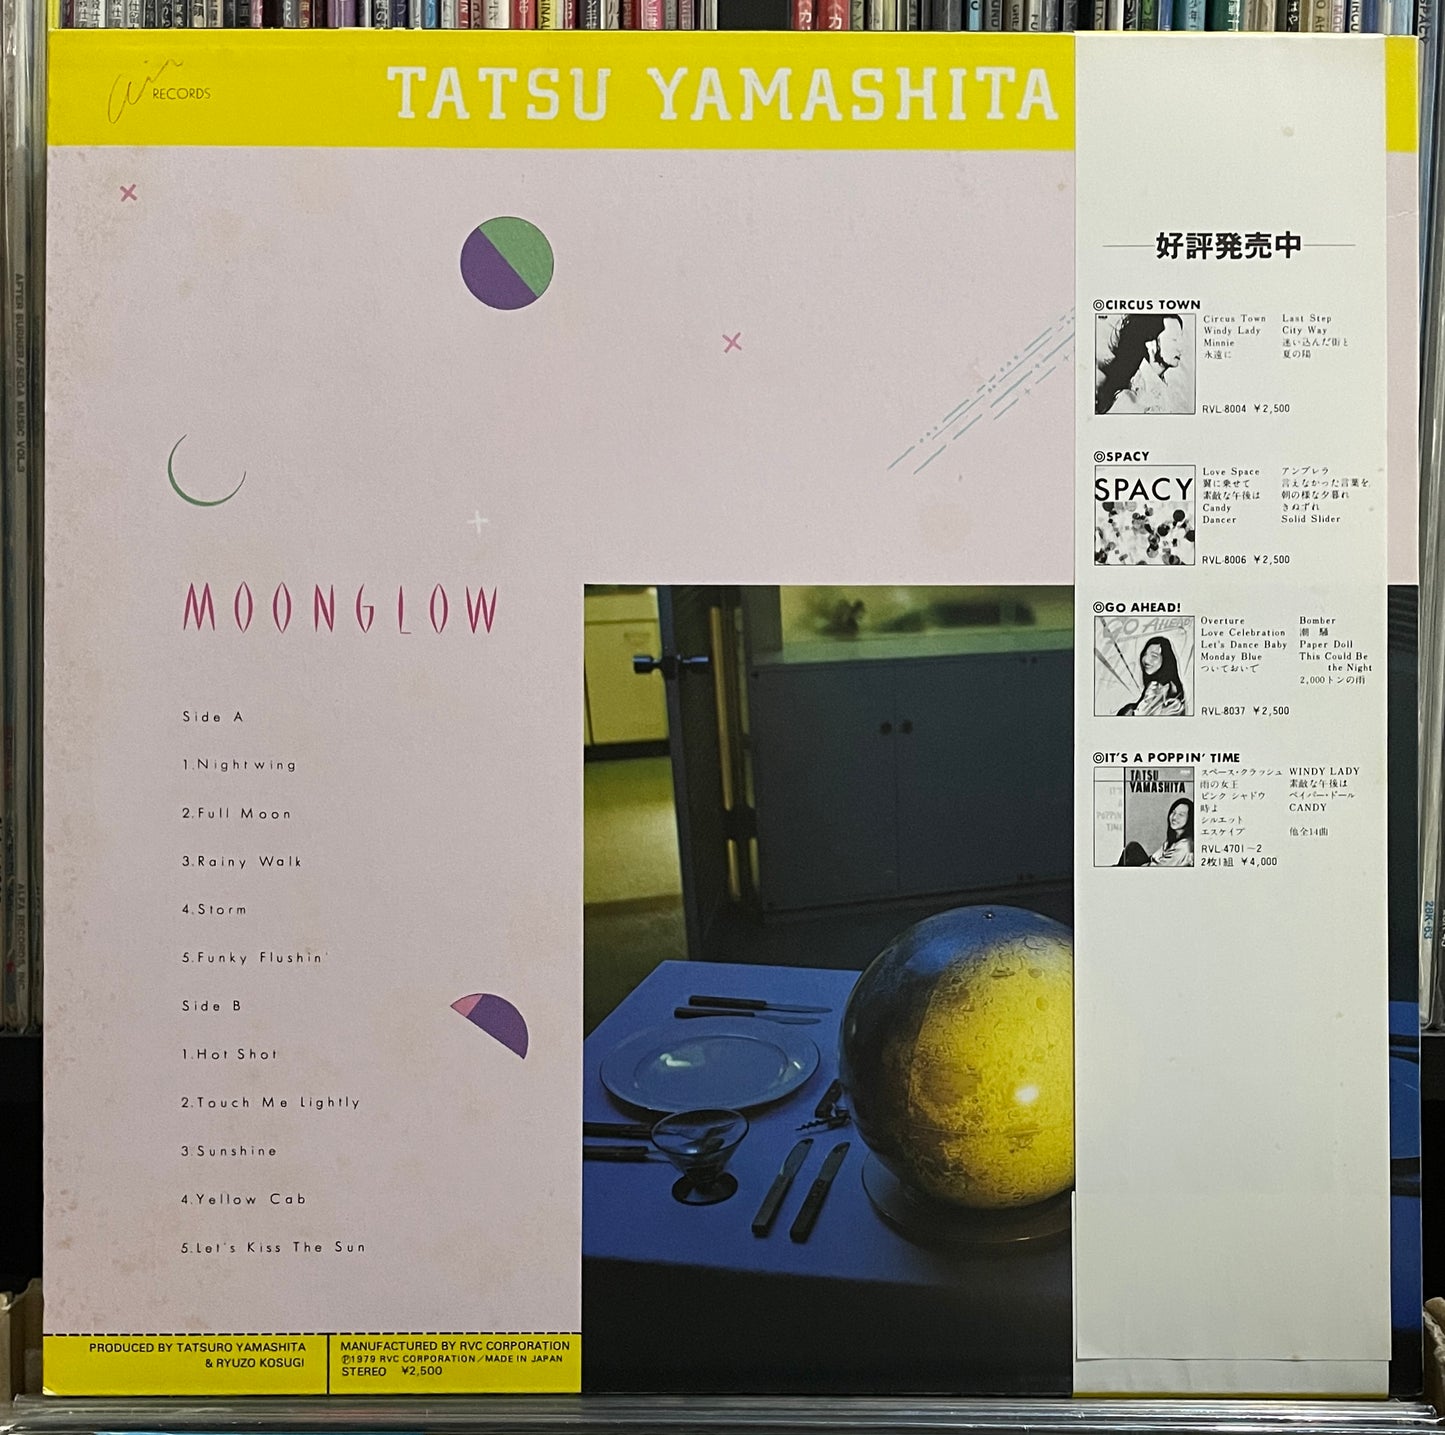 Tatsuro Yamashita “Moonglow” (1979)